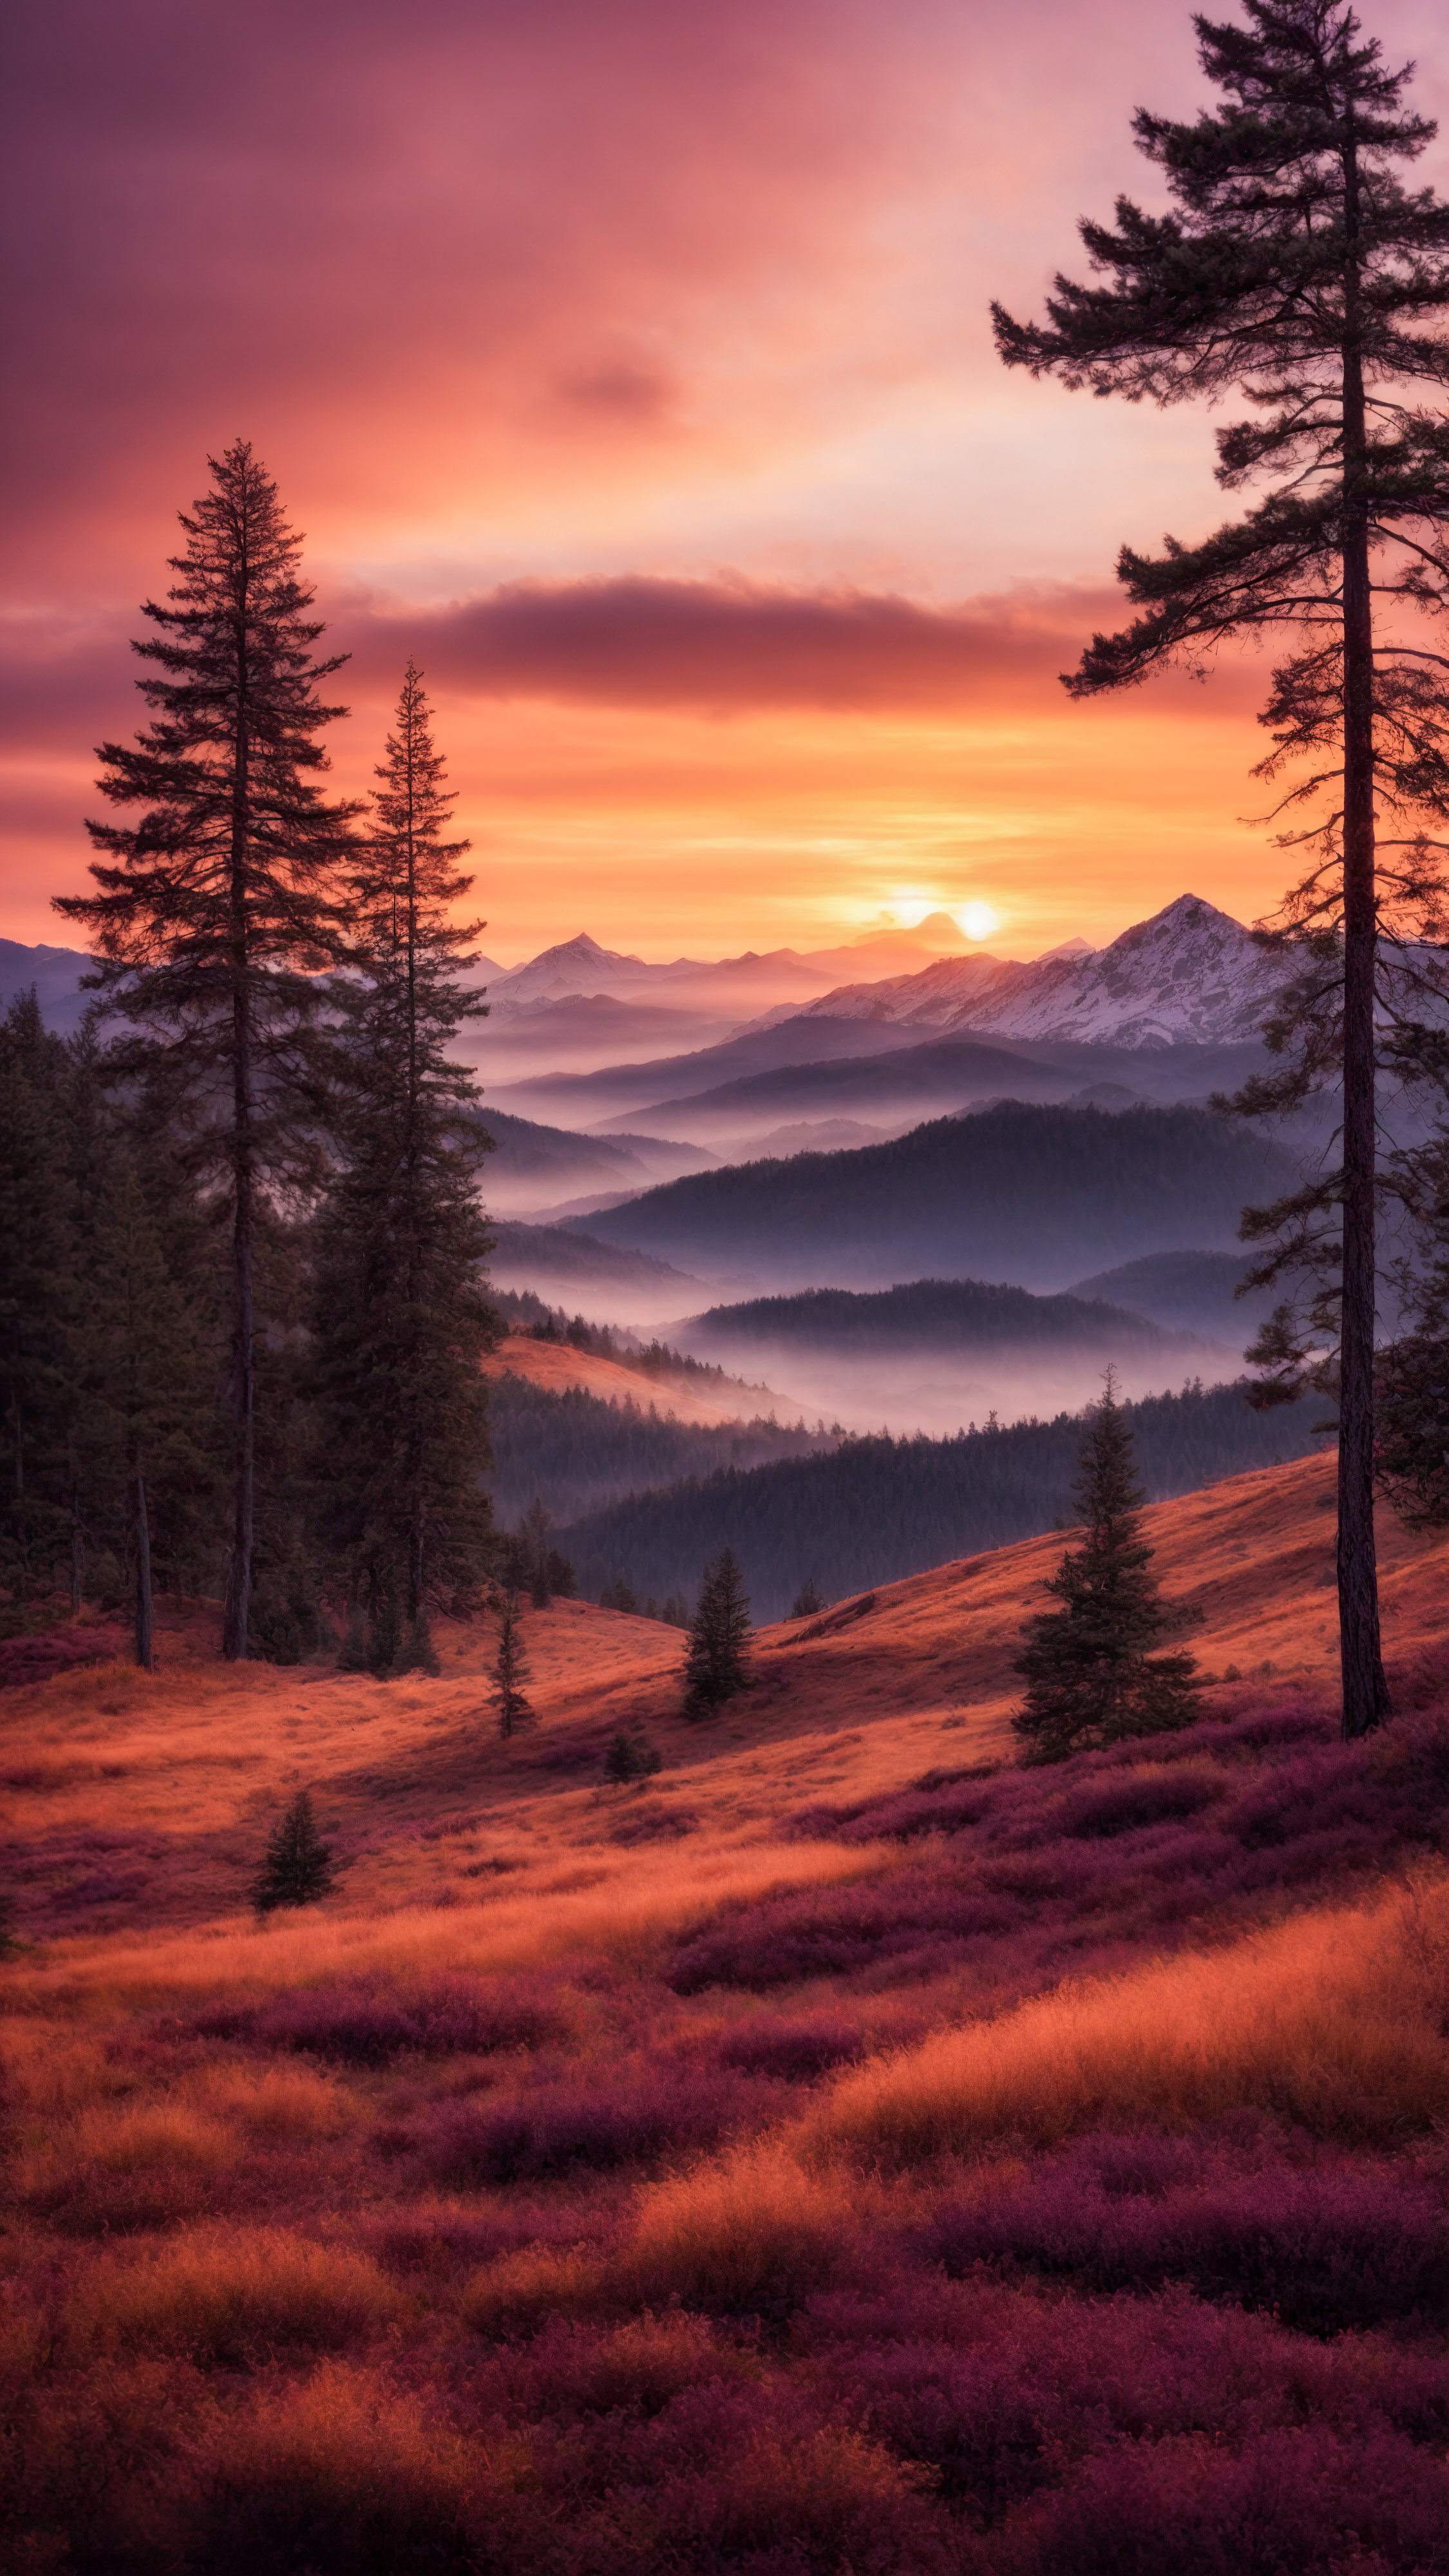 Admirez l'élégance d'un coucher de soleil sur les montagnes, avec des nuages orange et violet et une forêt de pins en silhouette, en téléchargeant ce fond d'écran pour iPhone.